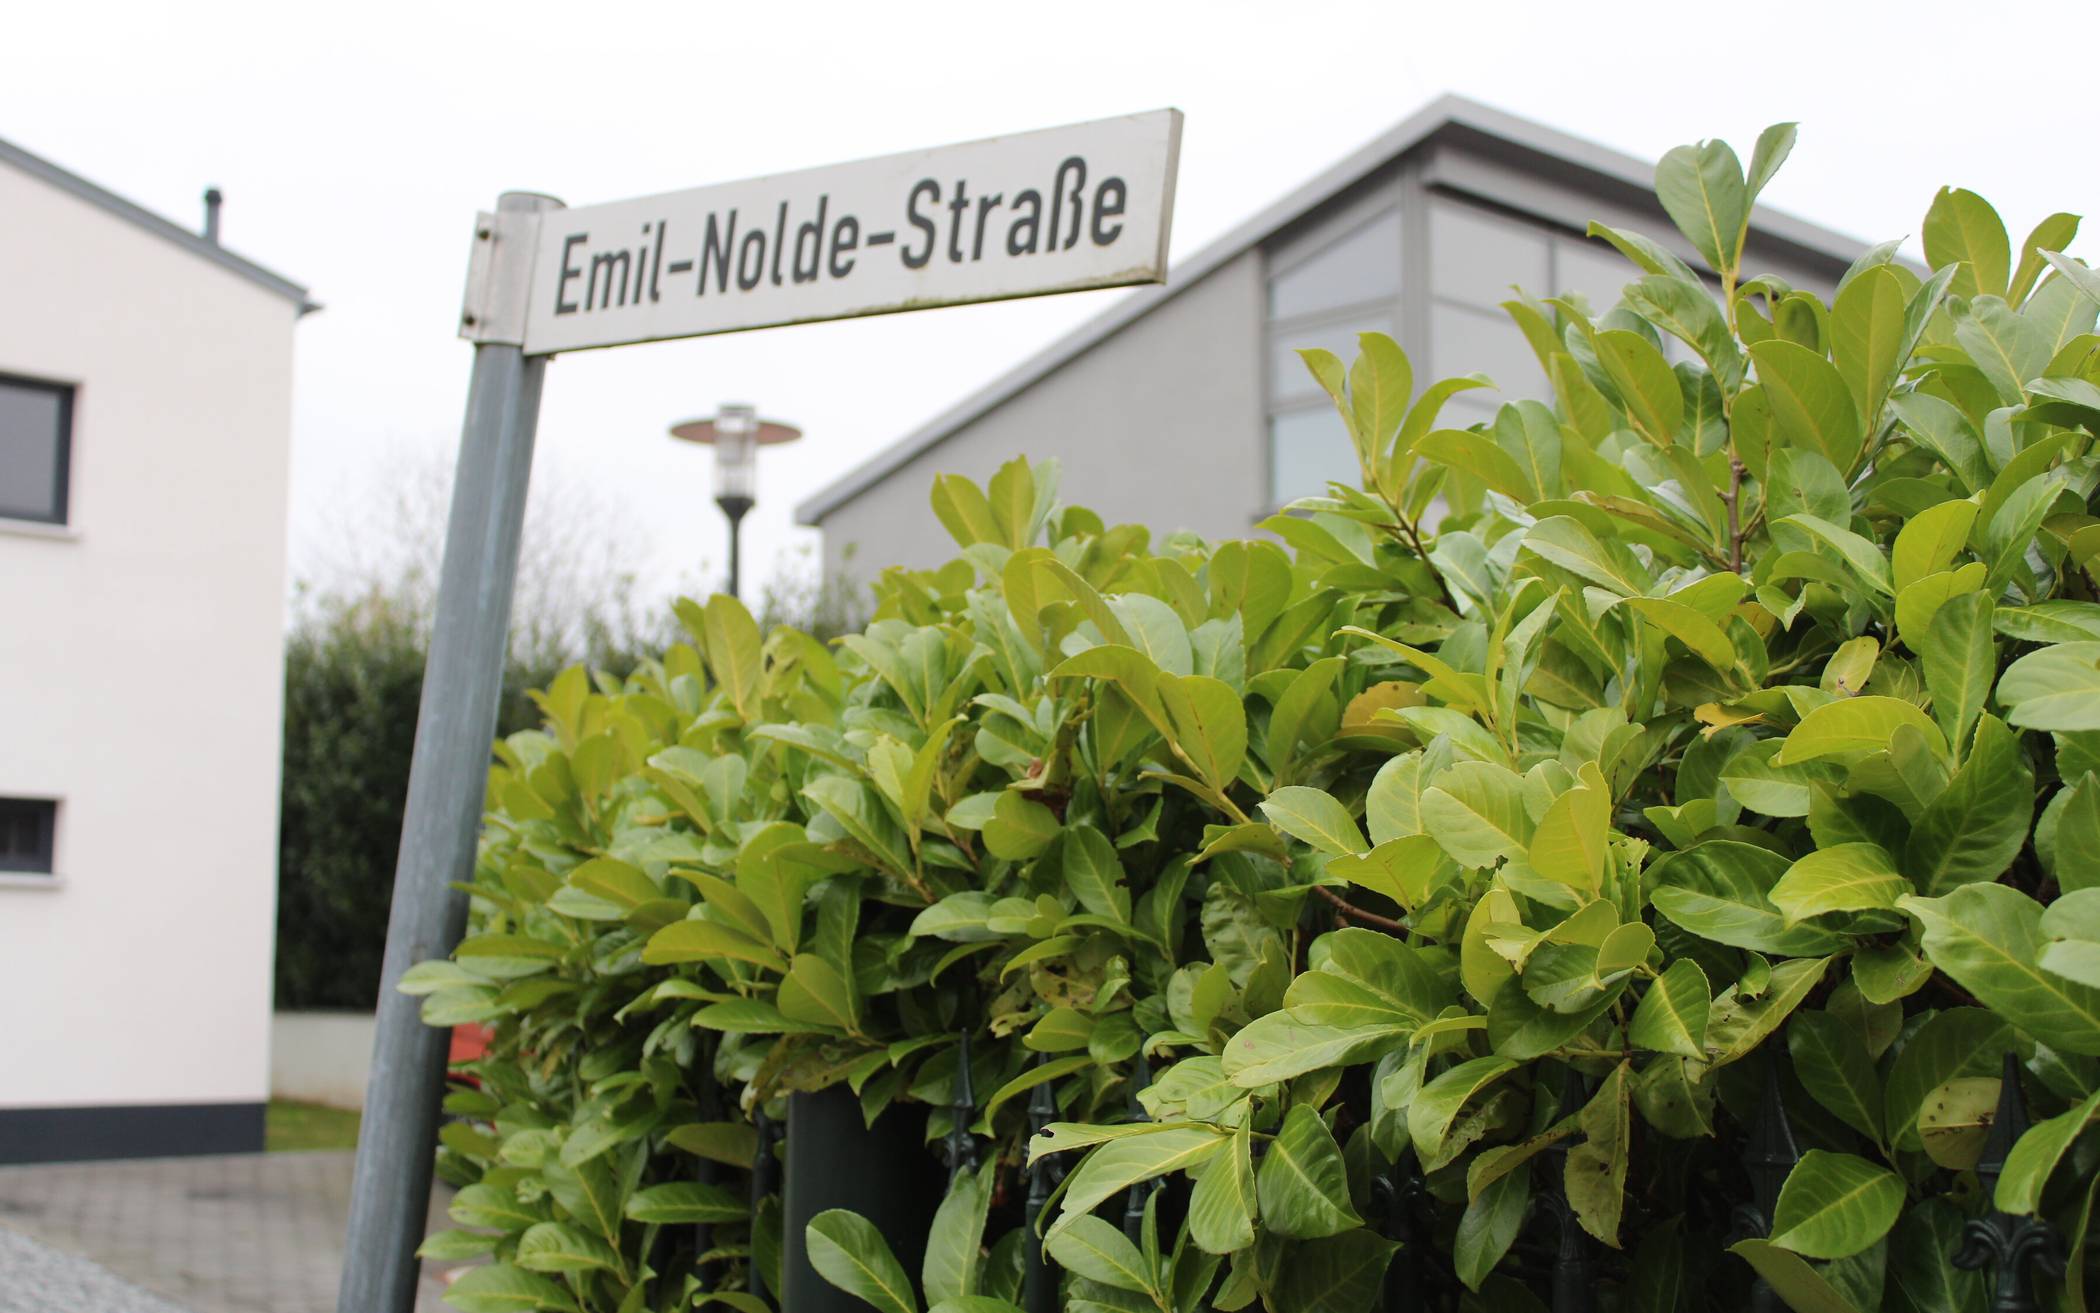  Emil-Nolde-Straße Mettmann. 